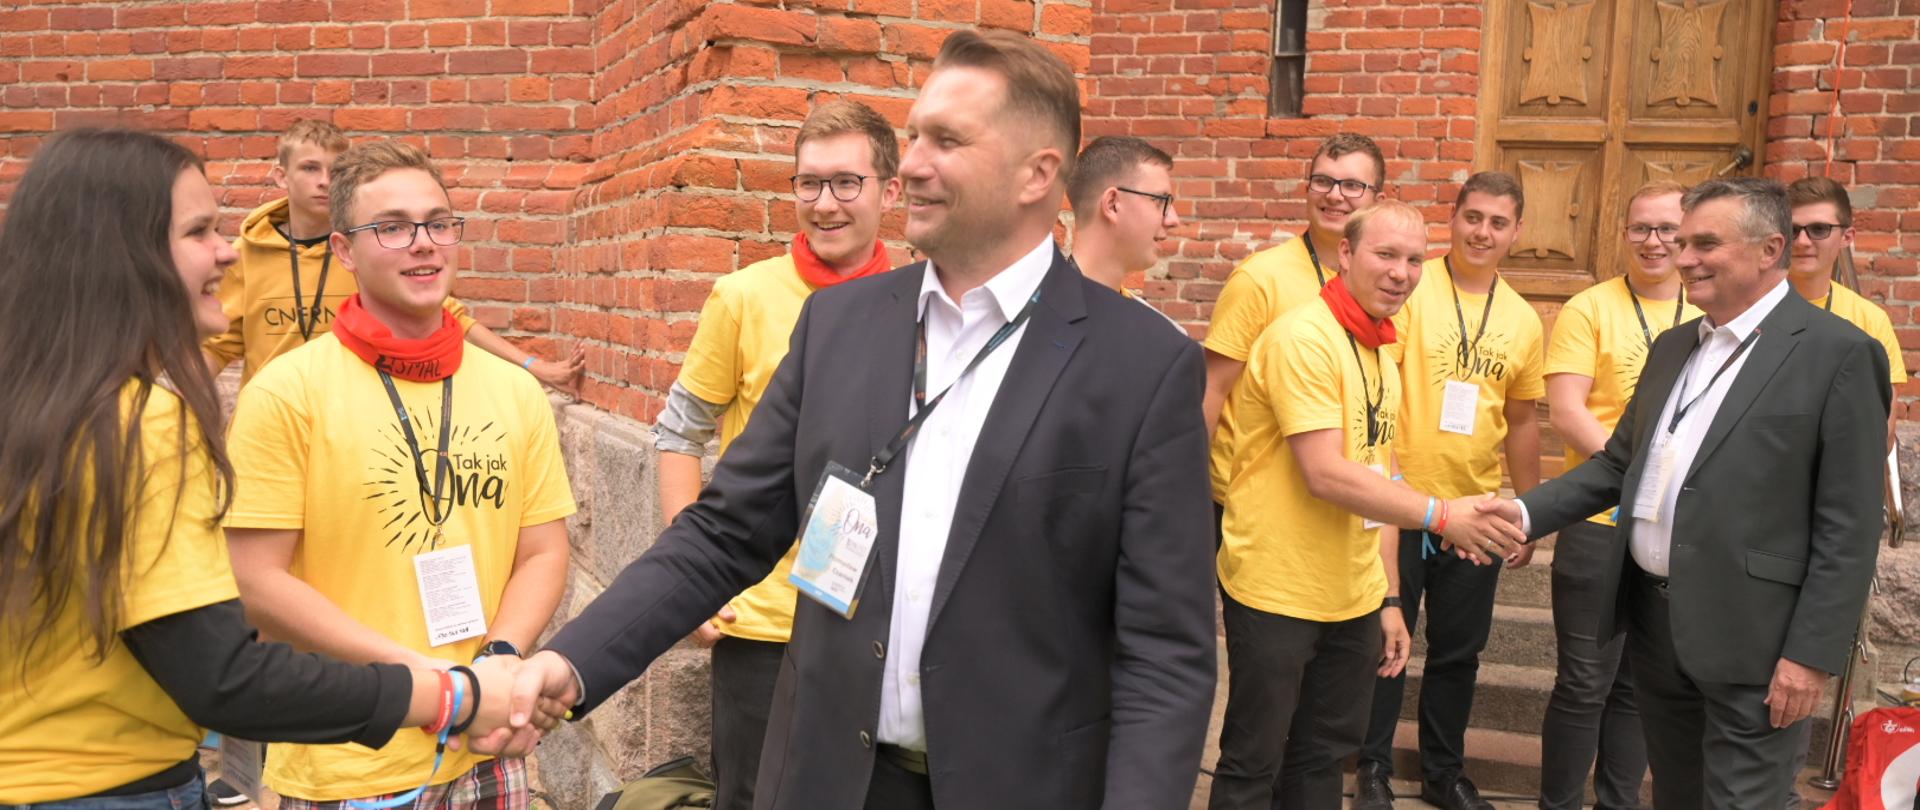 W centralnej części zdjęcia Minister Przemysław Czarnek wita się z młodzieżą zgromadzoną na spotkaniu młodych archidiecezji lubelskiej. w tle inni uczestnicy spotkania. tłem zdjęcia jest kościół.